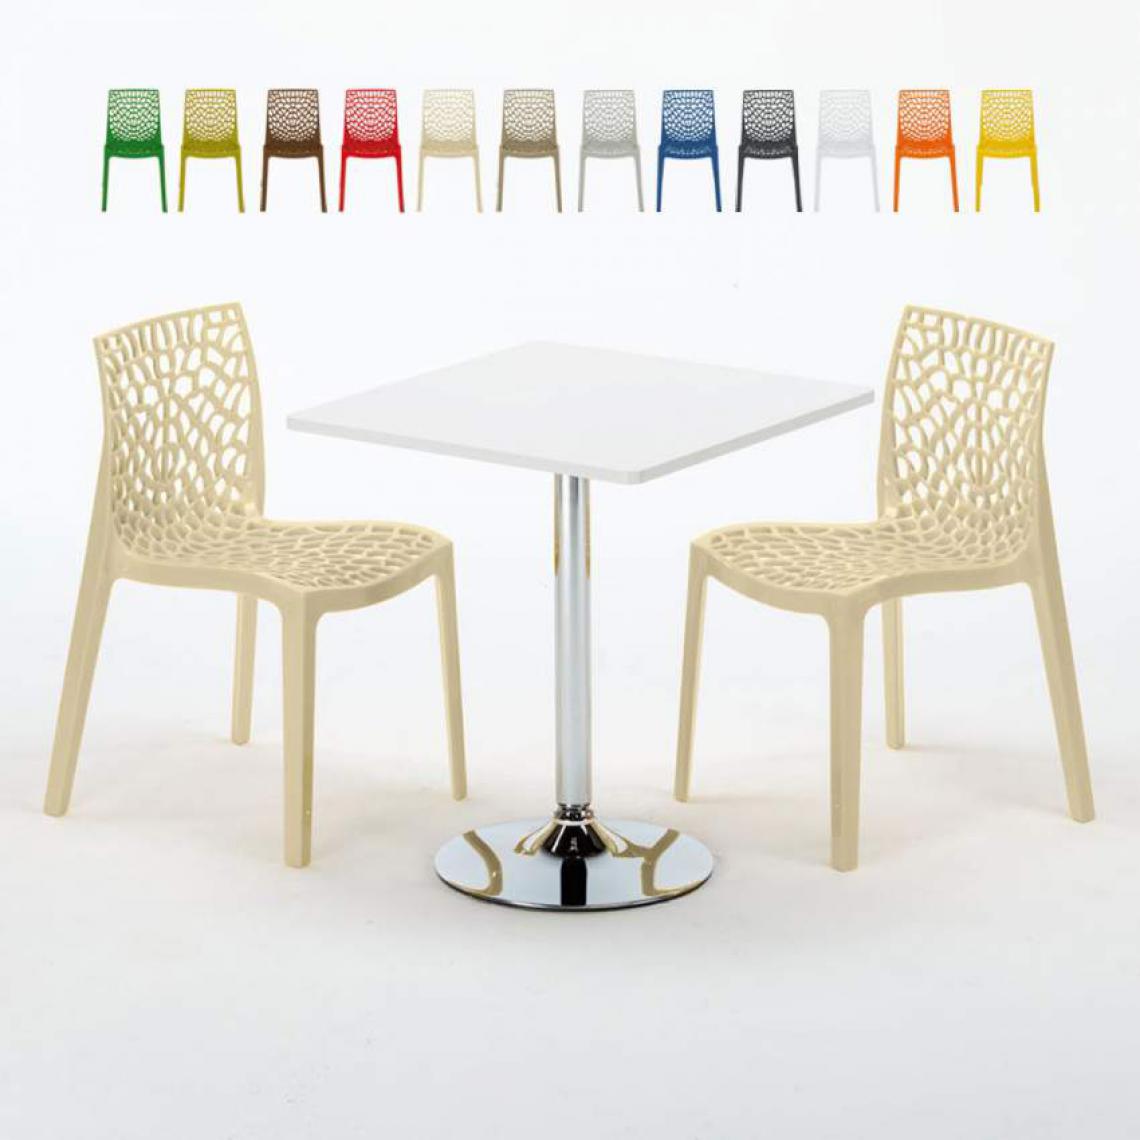 Grand Soleil - Table Carrée Blanche 70x70cm Avec 2 Chaises Colorées Grand Soleil Set Intérieur Bar Café Gruvyer Cocktail, Couleur: Beige - Tables à manger